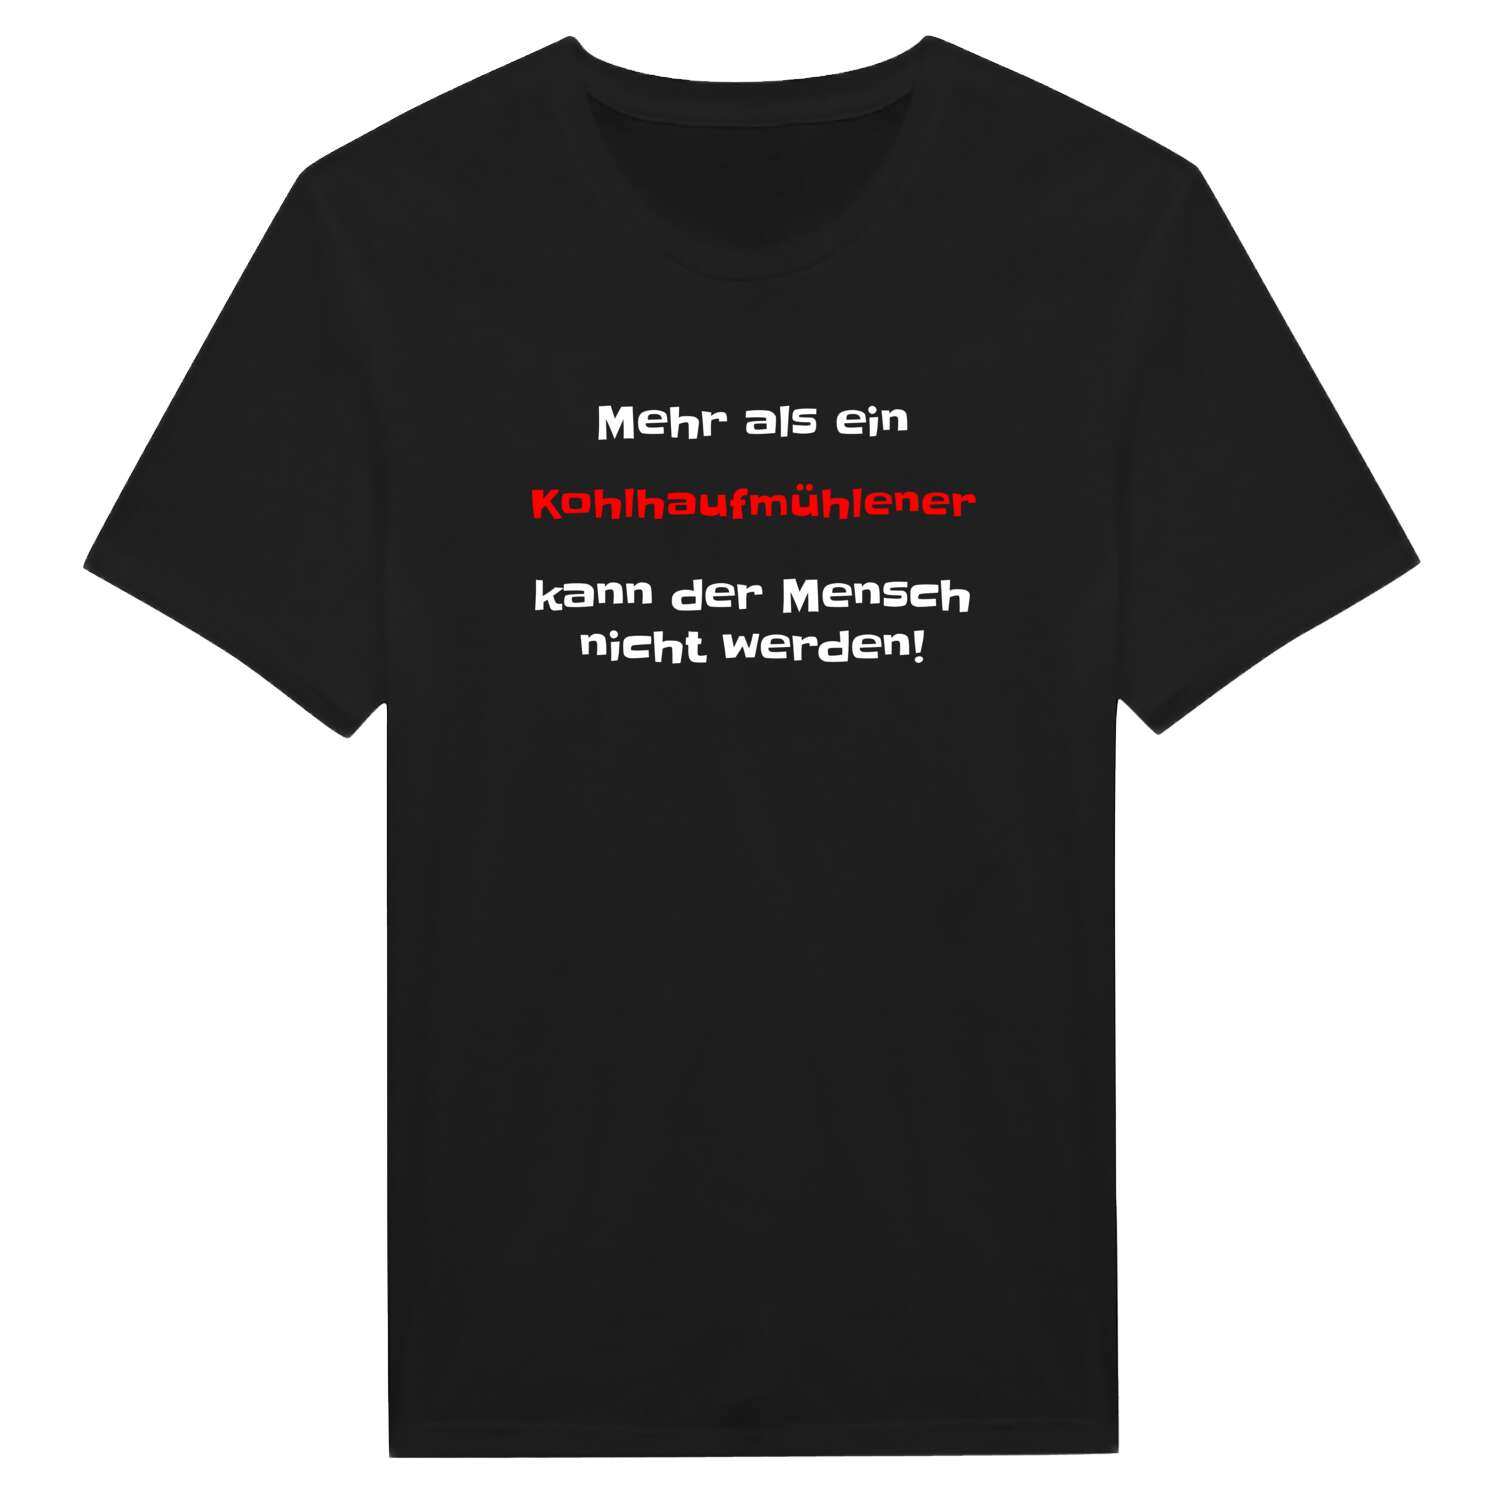 Kohlhaufmühle T-Shirt »Mehr als ein«